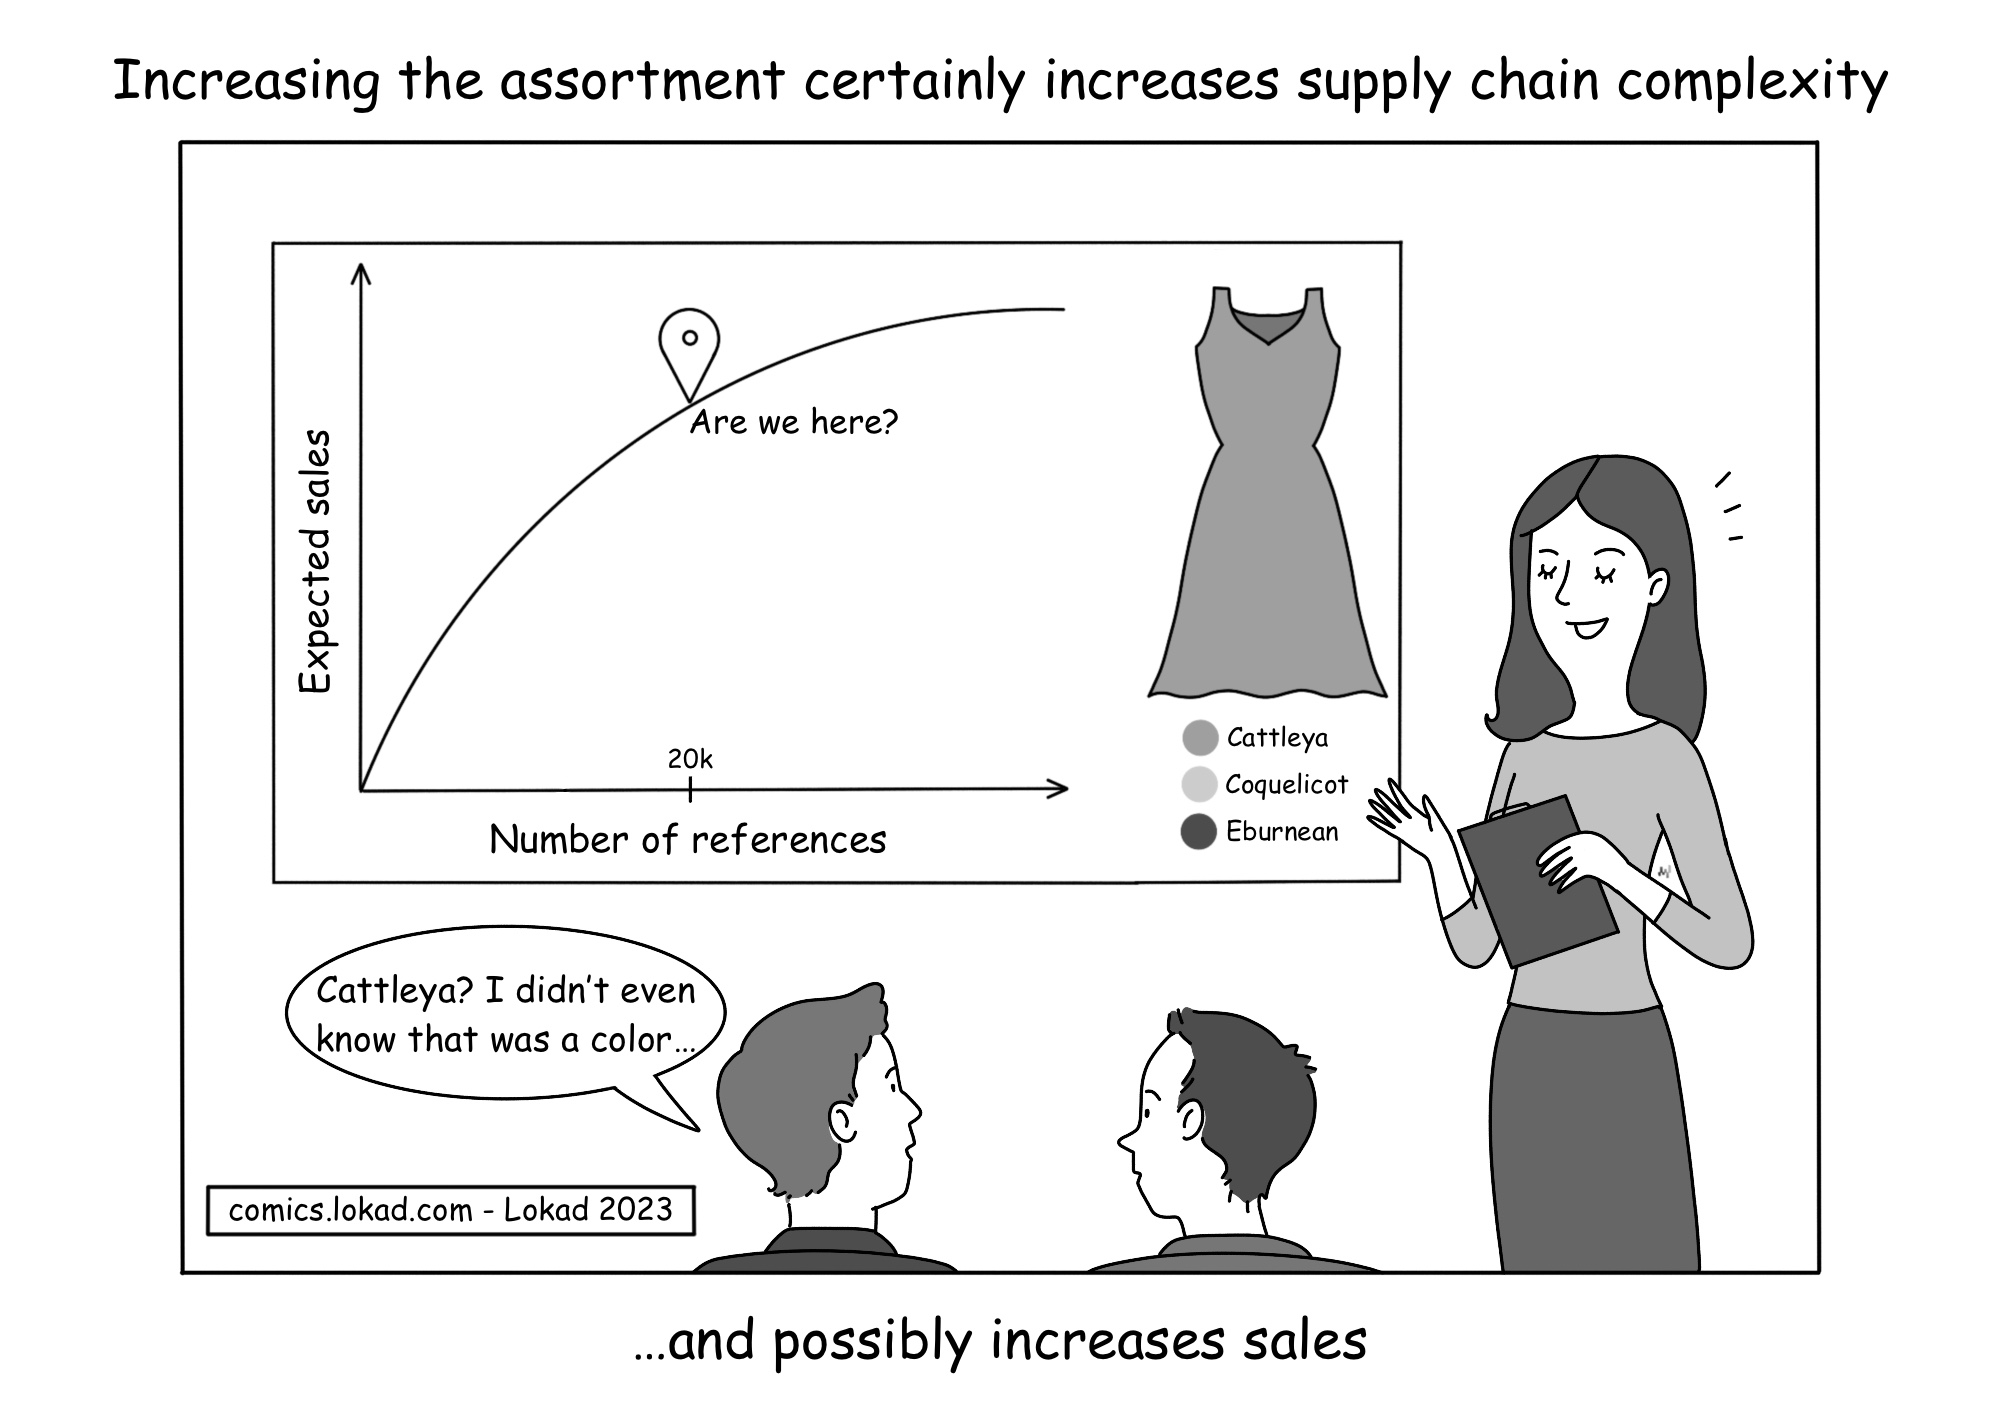 Die Erhöhung des Sortiments erhöht sicherlich die Komplexität der Supply Chain